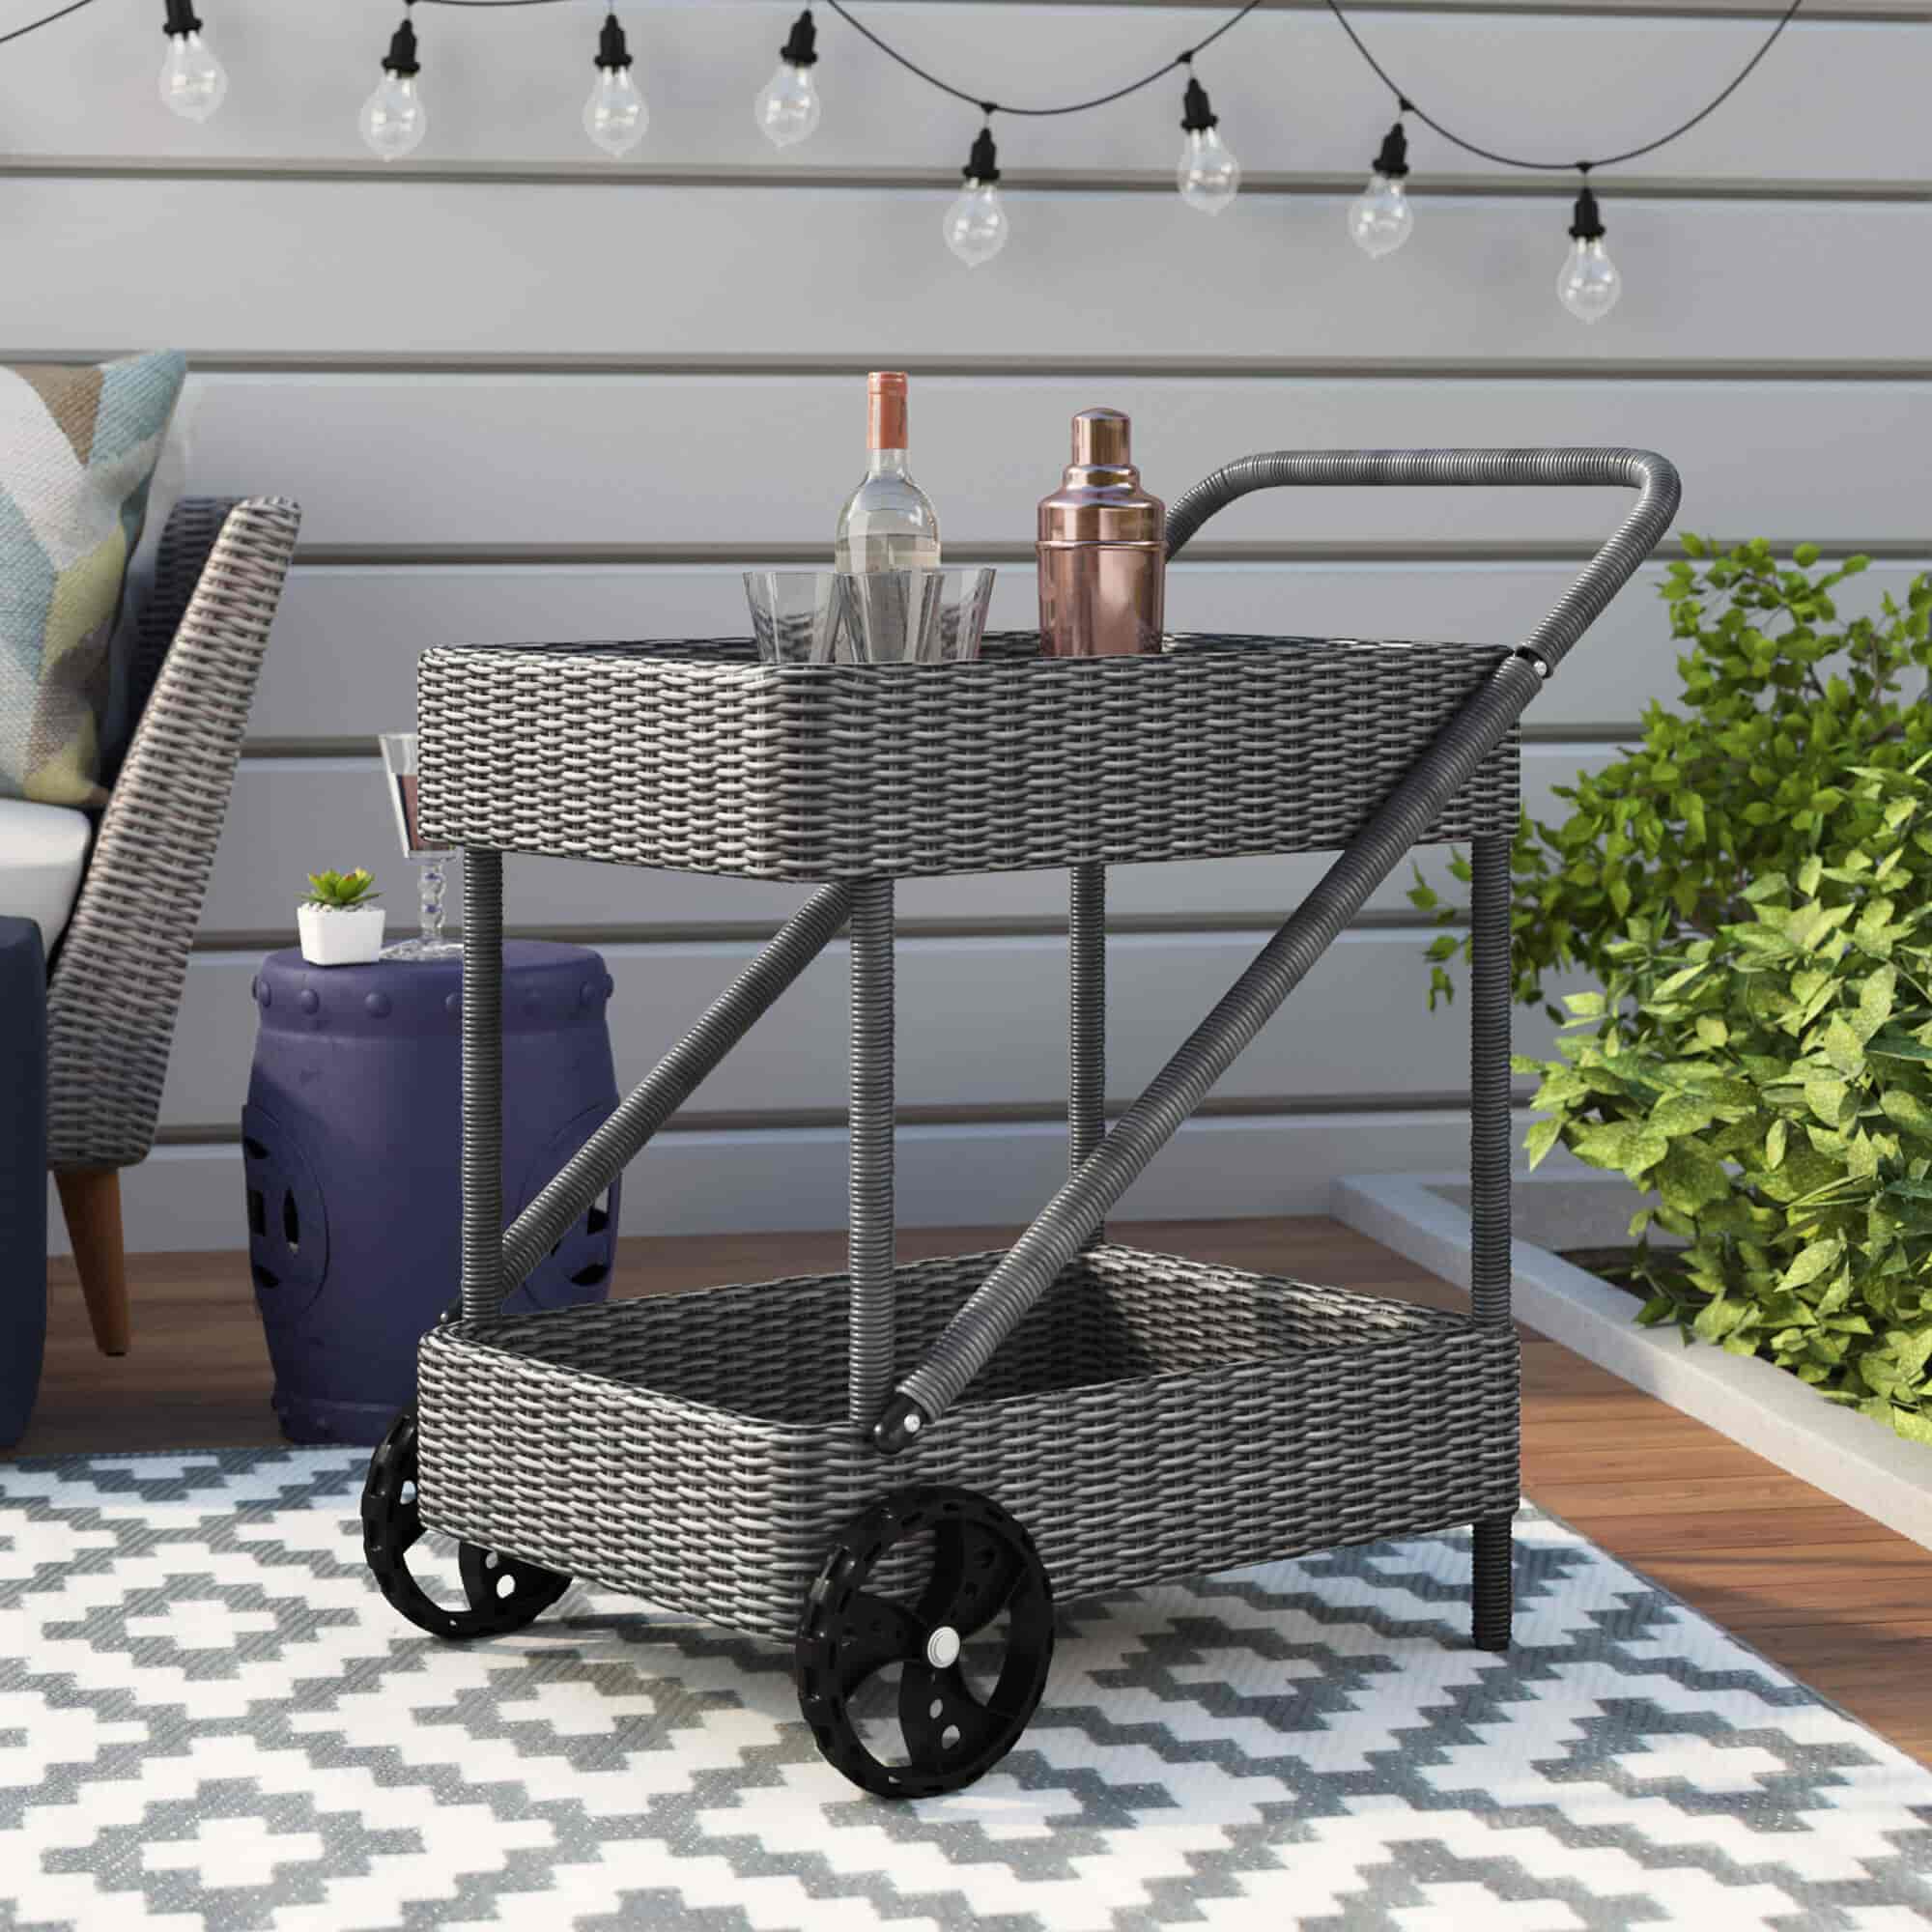 Outdoor bar cart